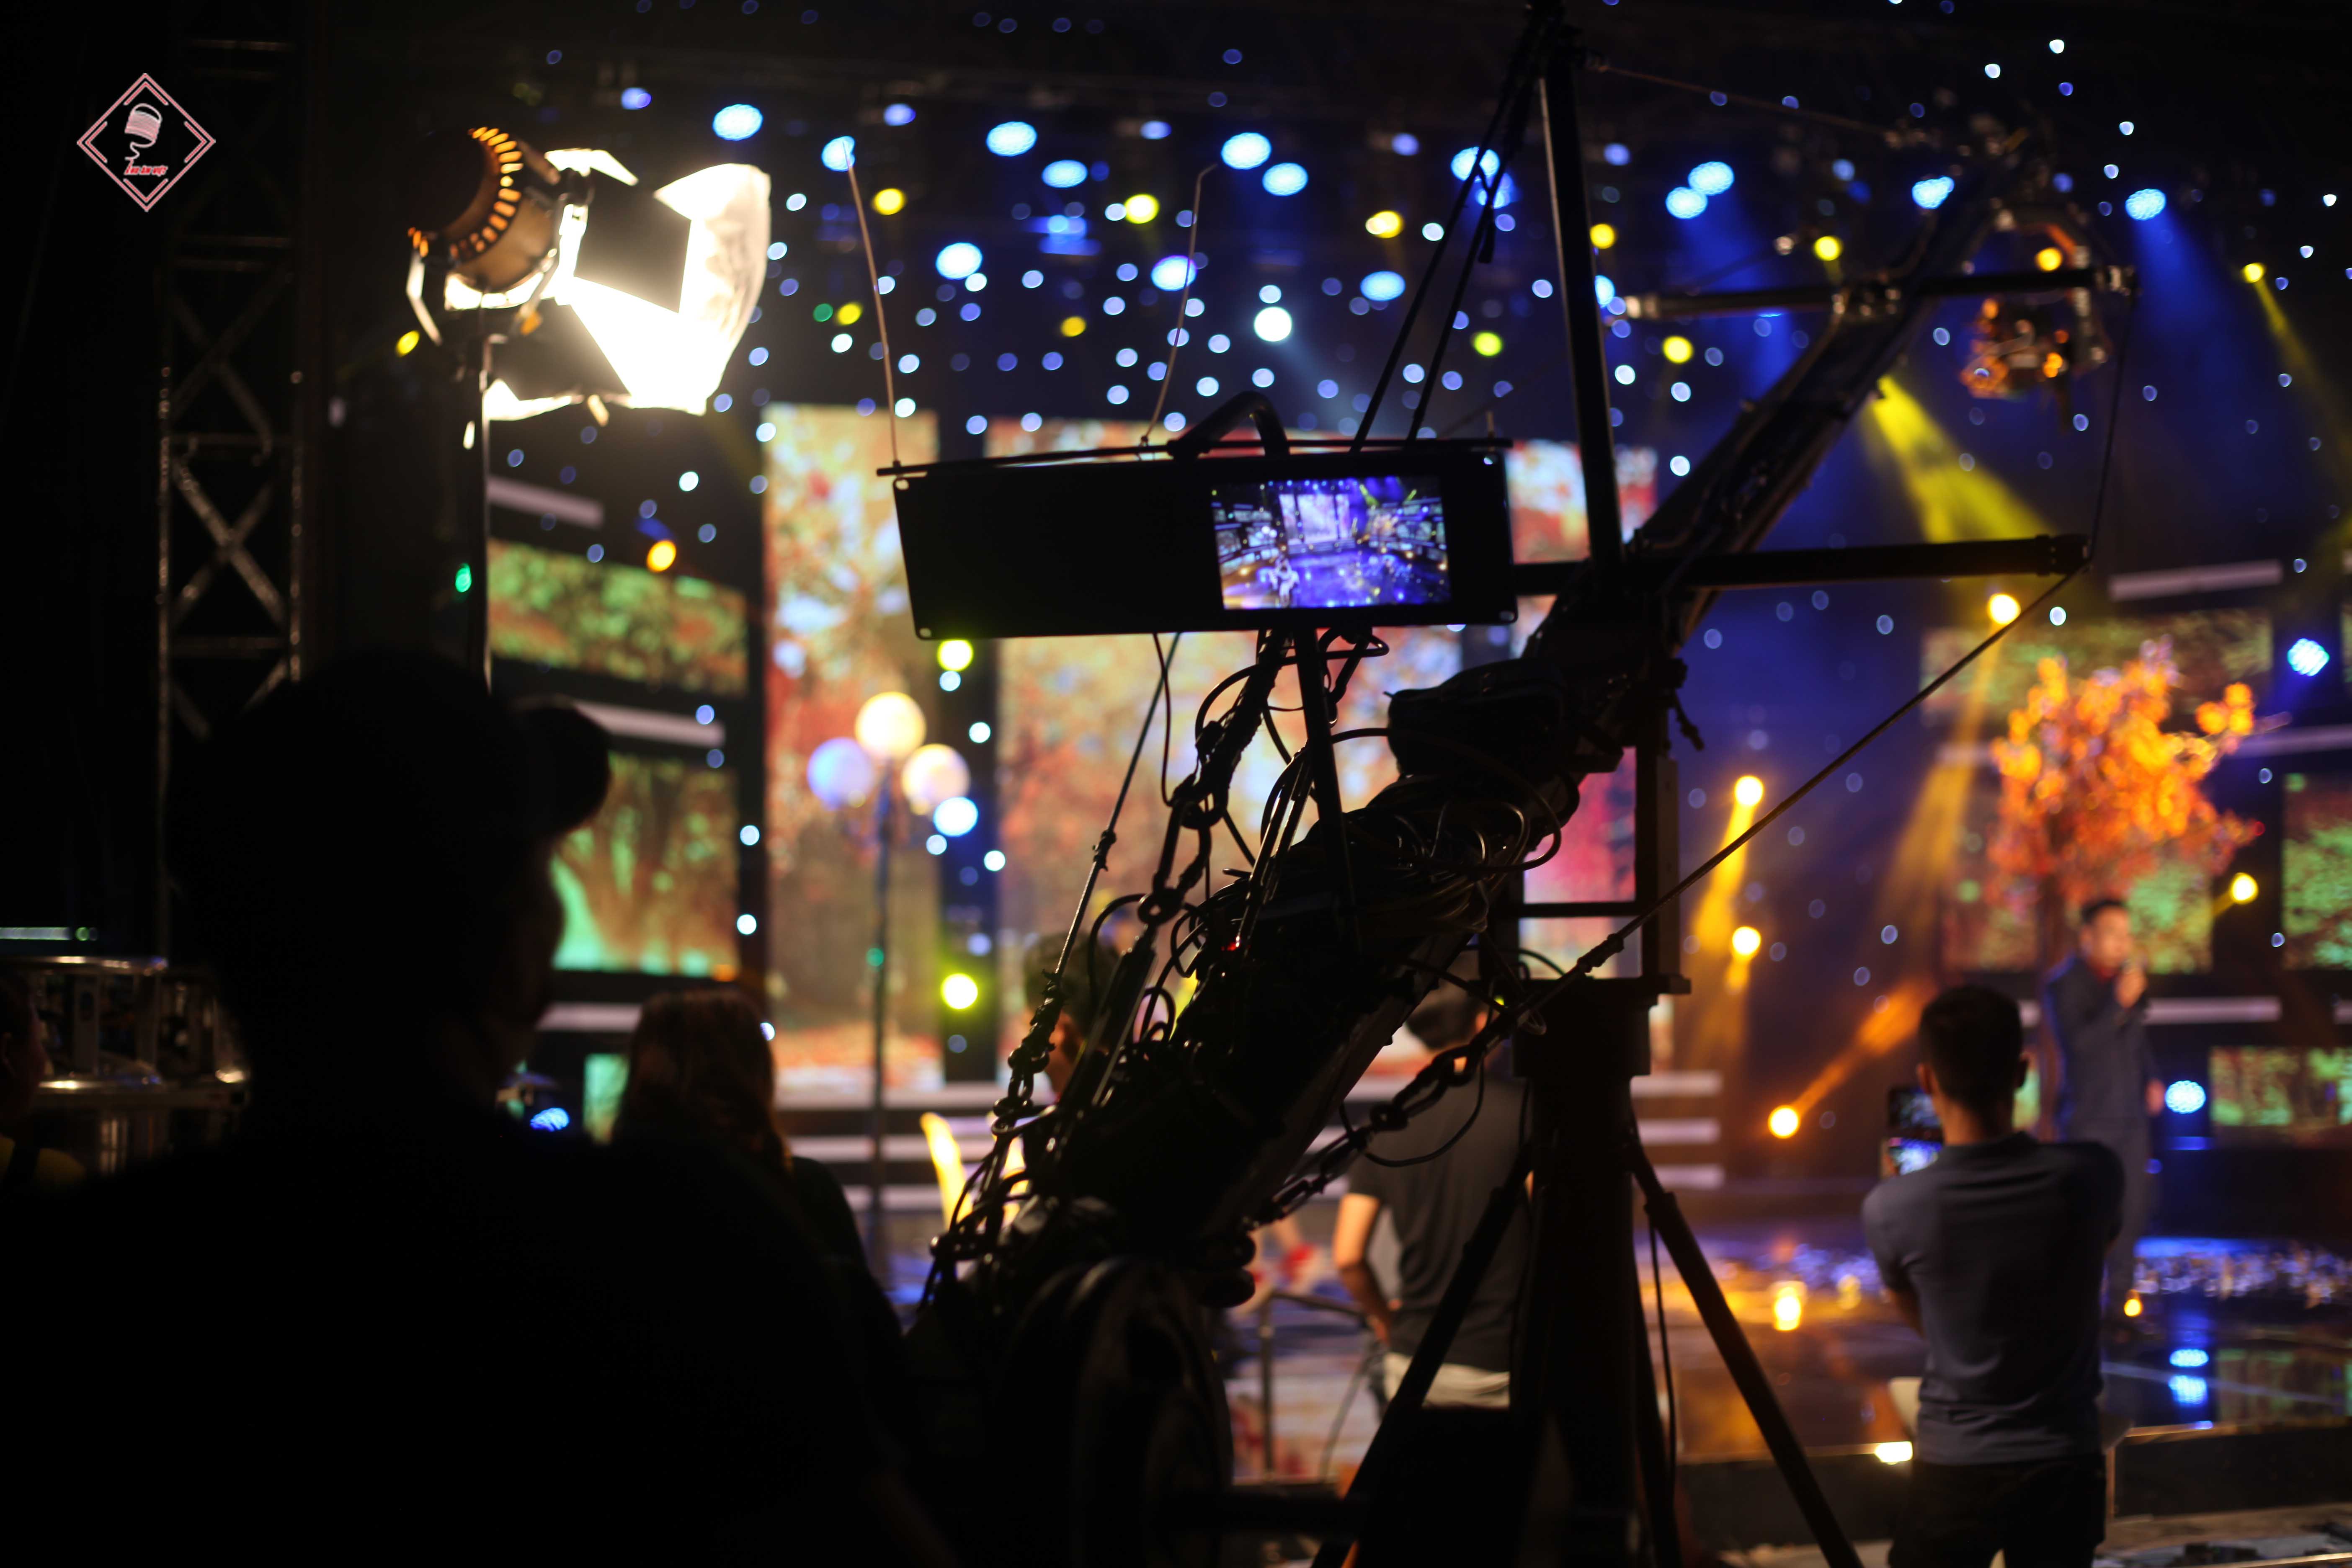 Ekip quay - dựng phim chuyên nghiệp tại Thu Âm Việt đang thực hiện dự án quay MV sân khấu